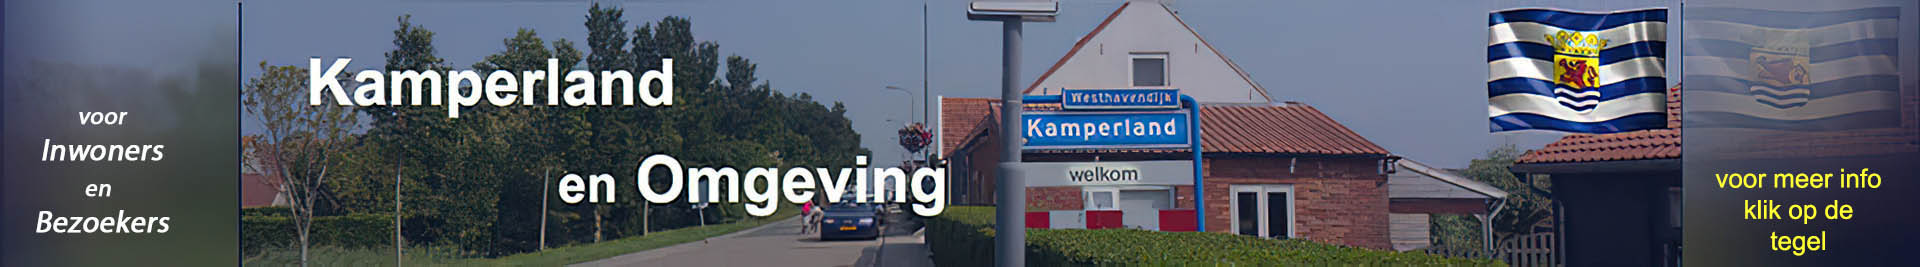 Kamperland en omgeving banner